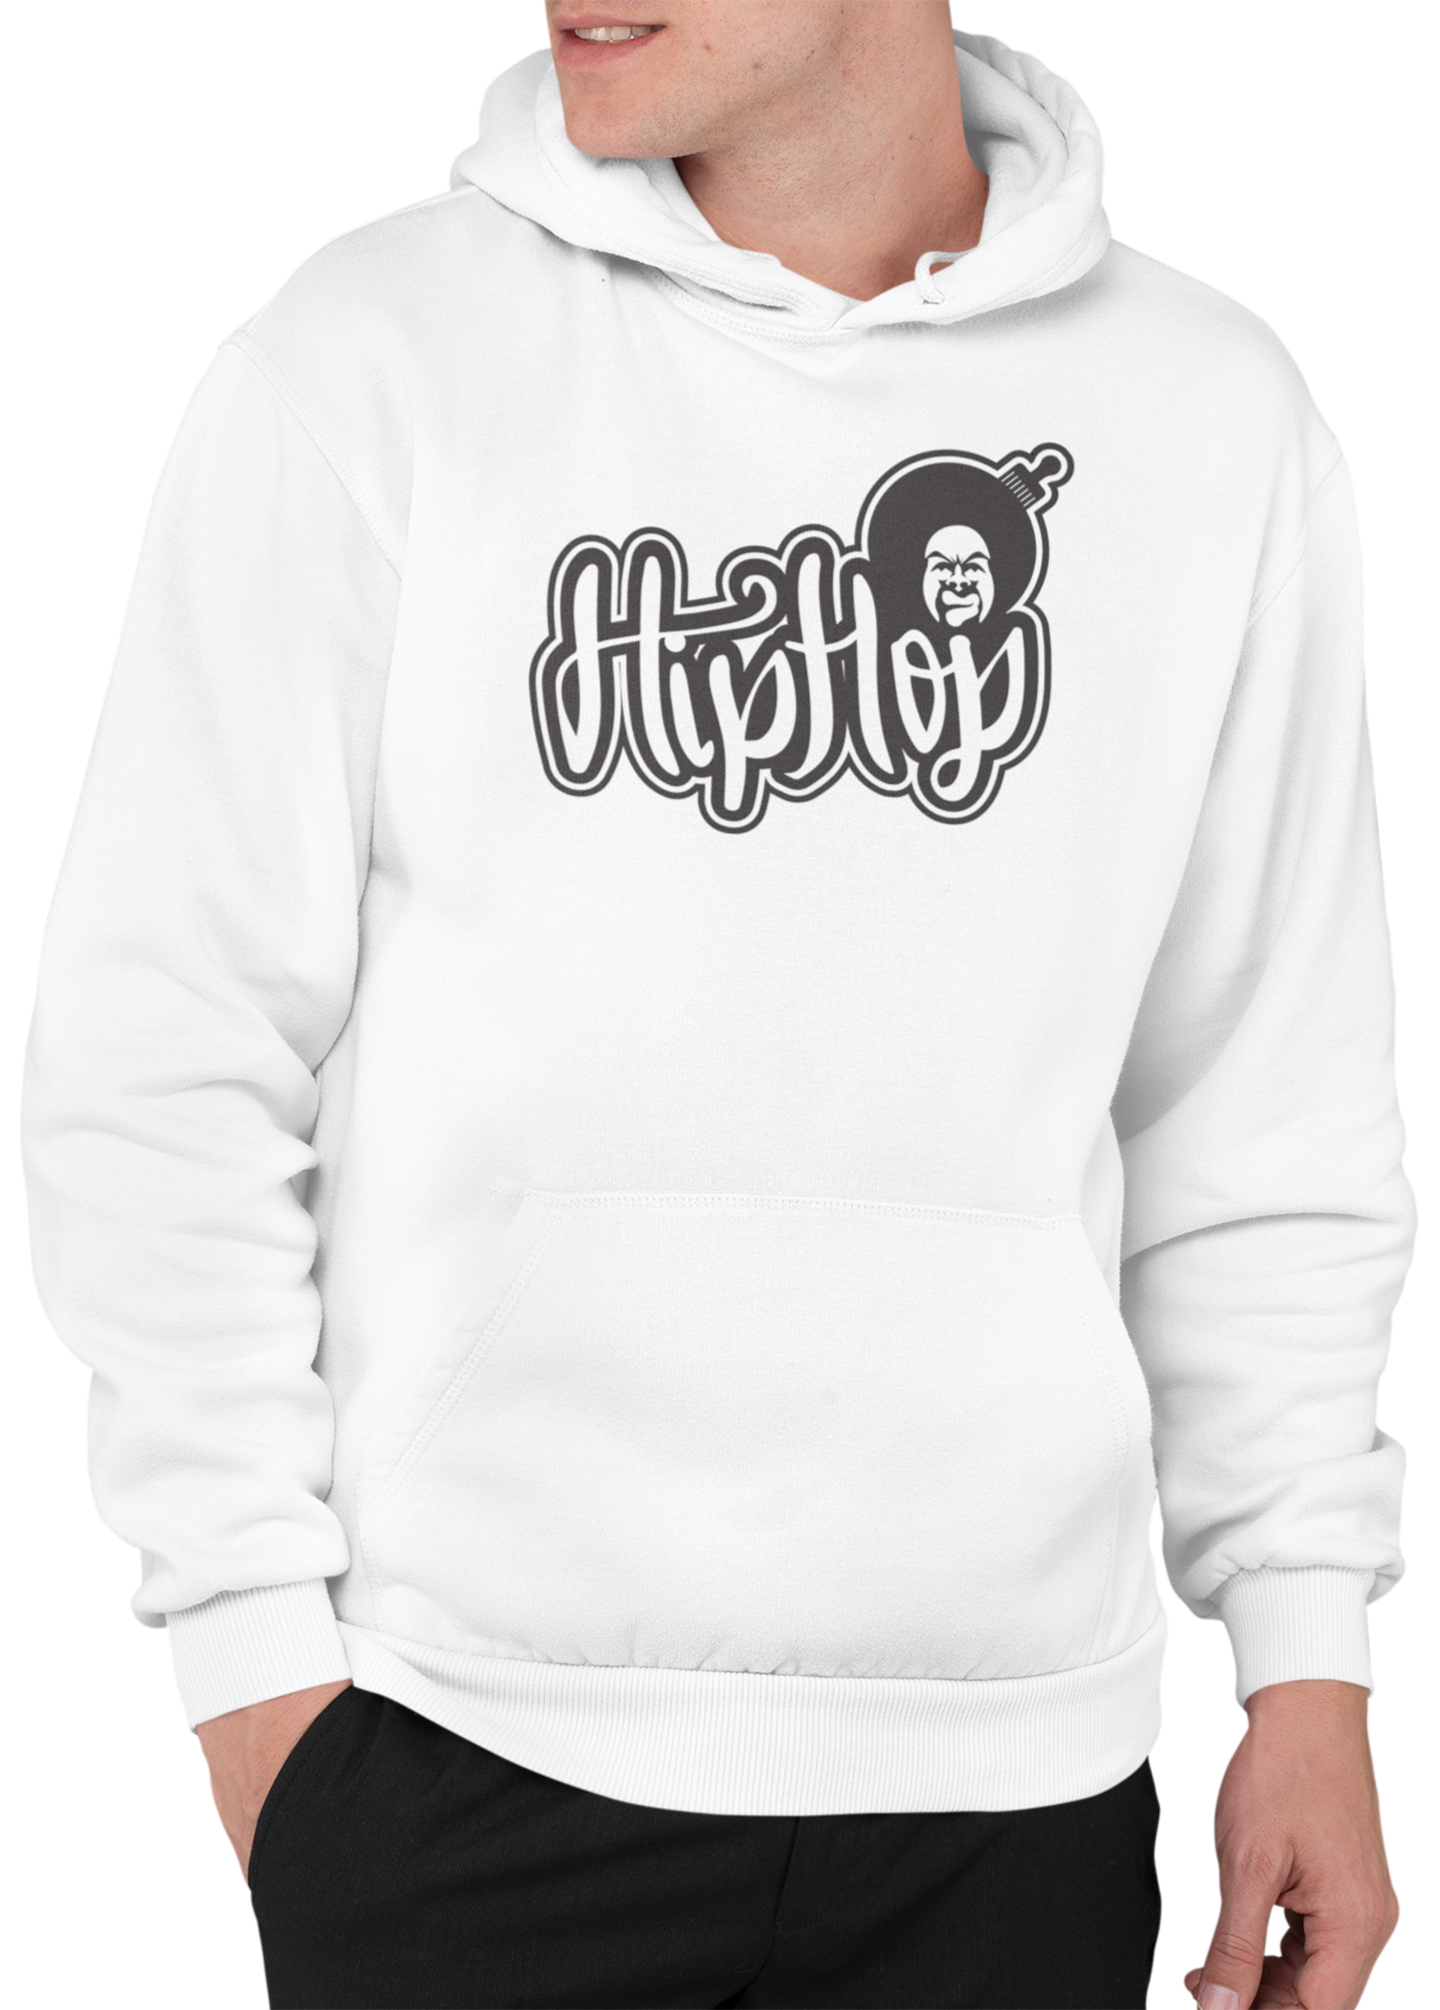 The Hiphop hoodie